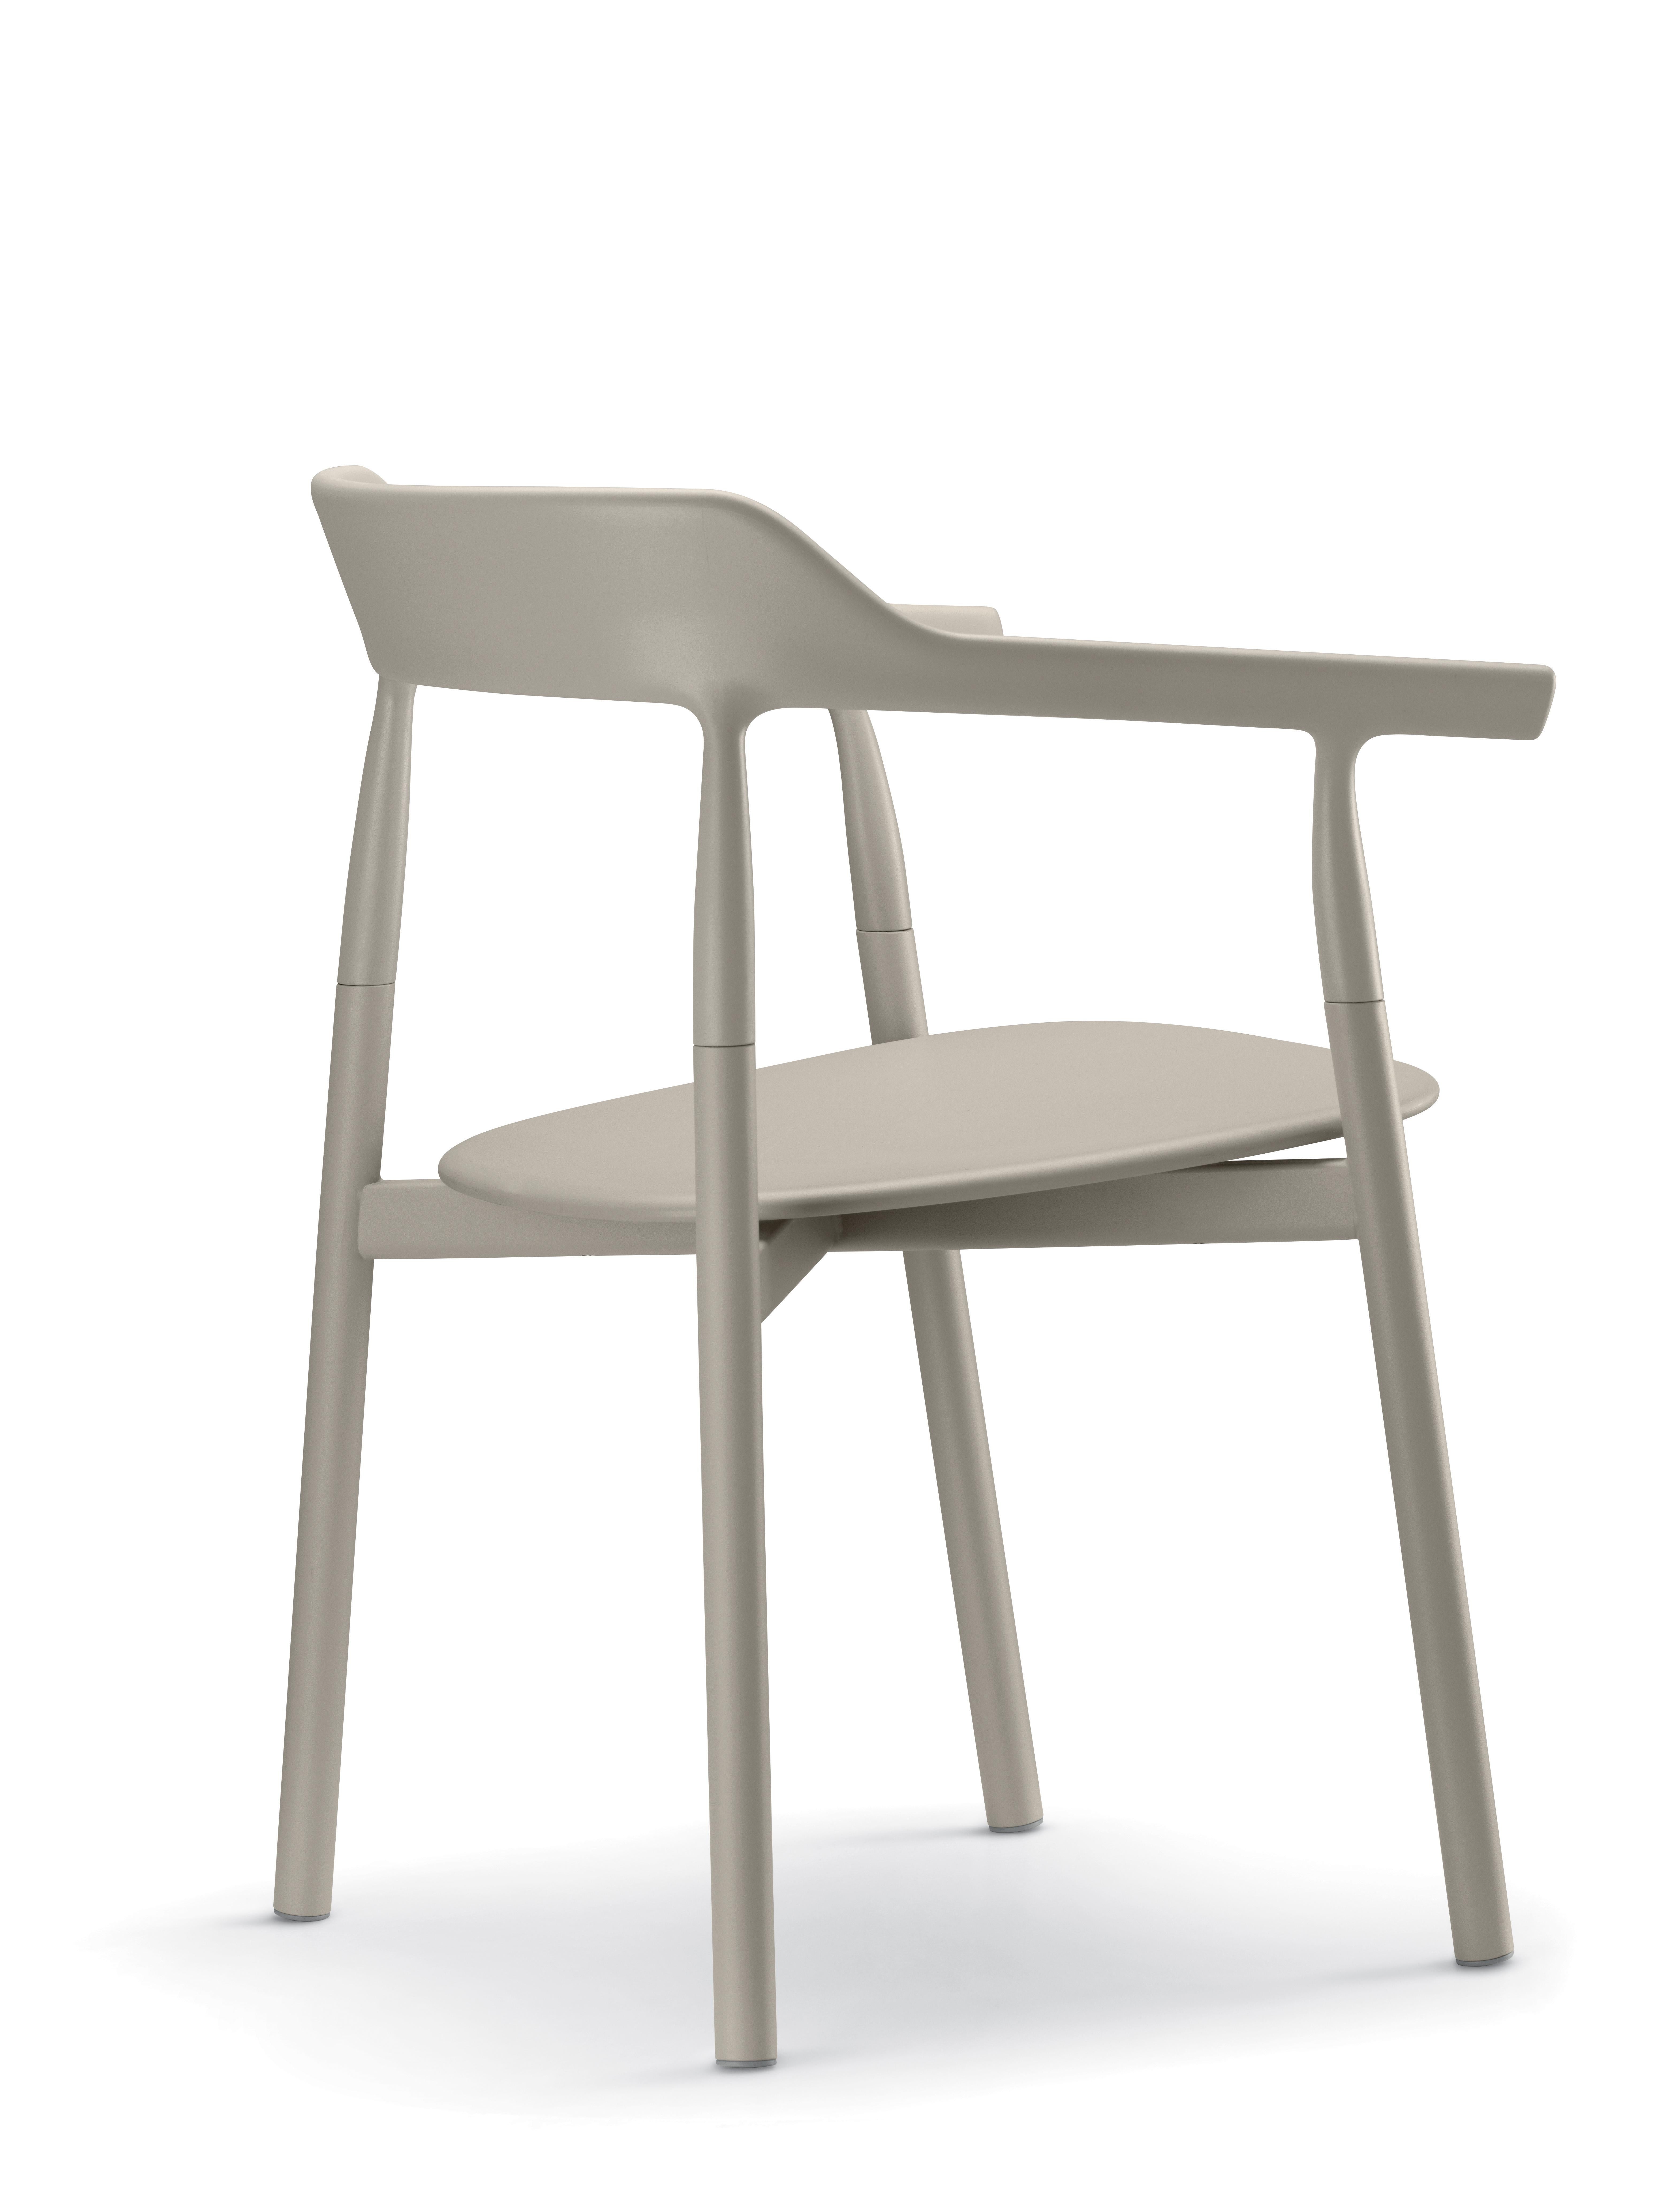 Chaise confort Alias 10E Twig, assise couleur sable et structure en acier laqué, par Nendo.

Chaise avec structure en acier laqué ; dossier en matière plastique solide laquée ; assise en matière plastique solide laquée ou tapissée de tissu ou de